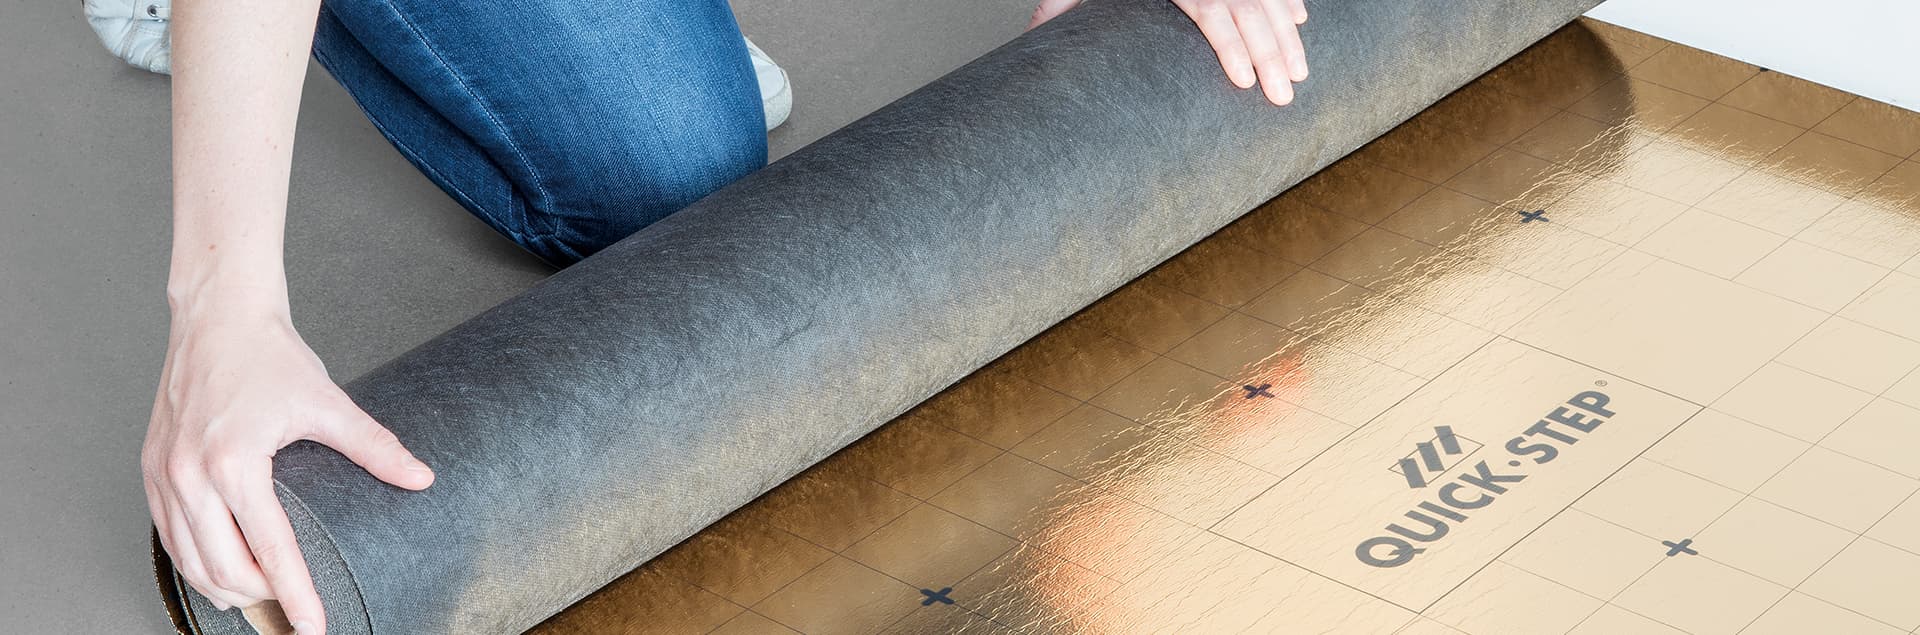 Podkladové vrstvy na laminátové podlahy Quick-Step